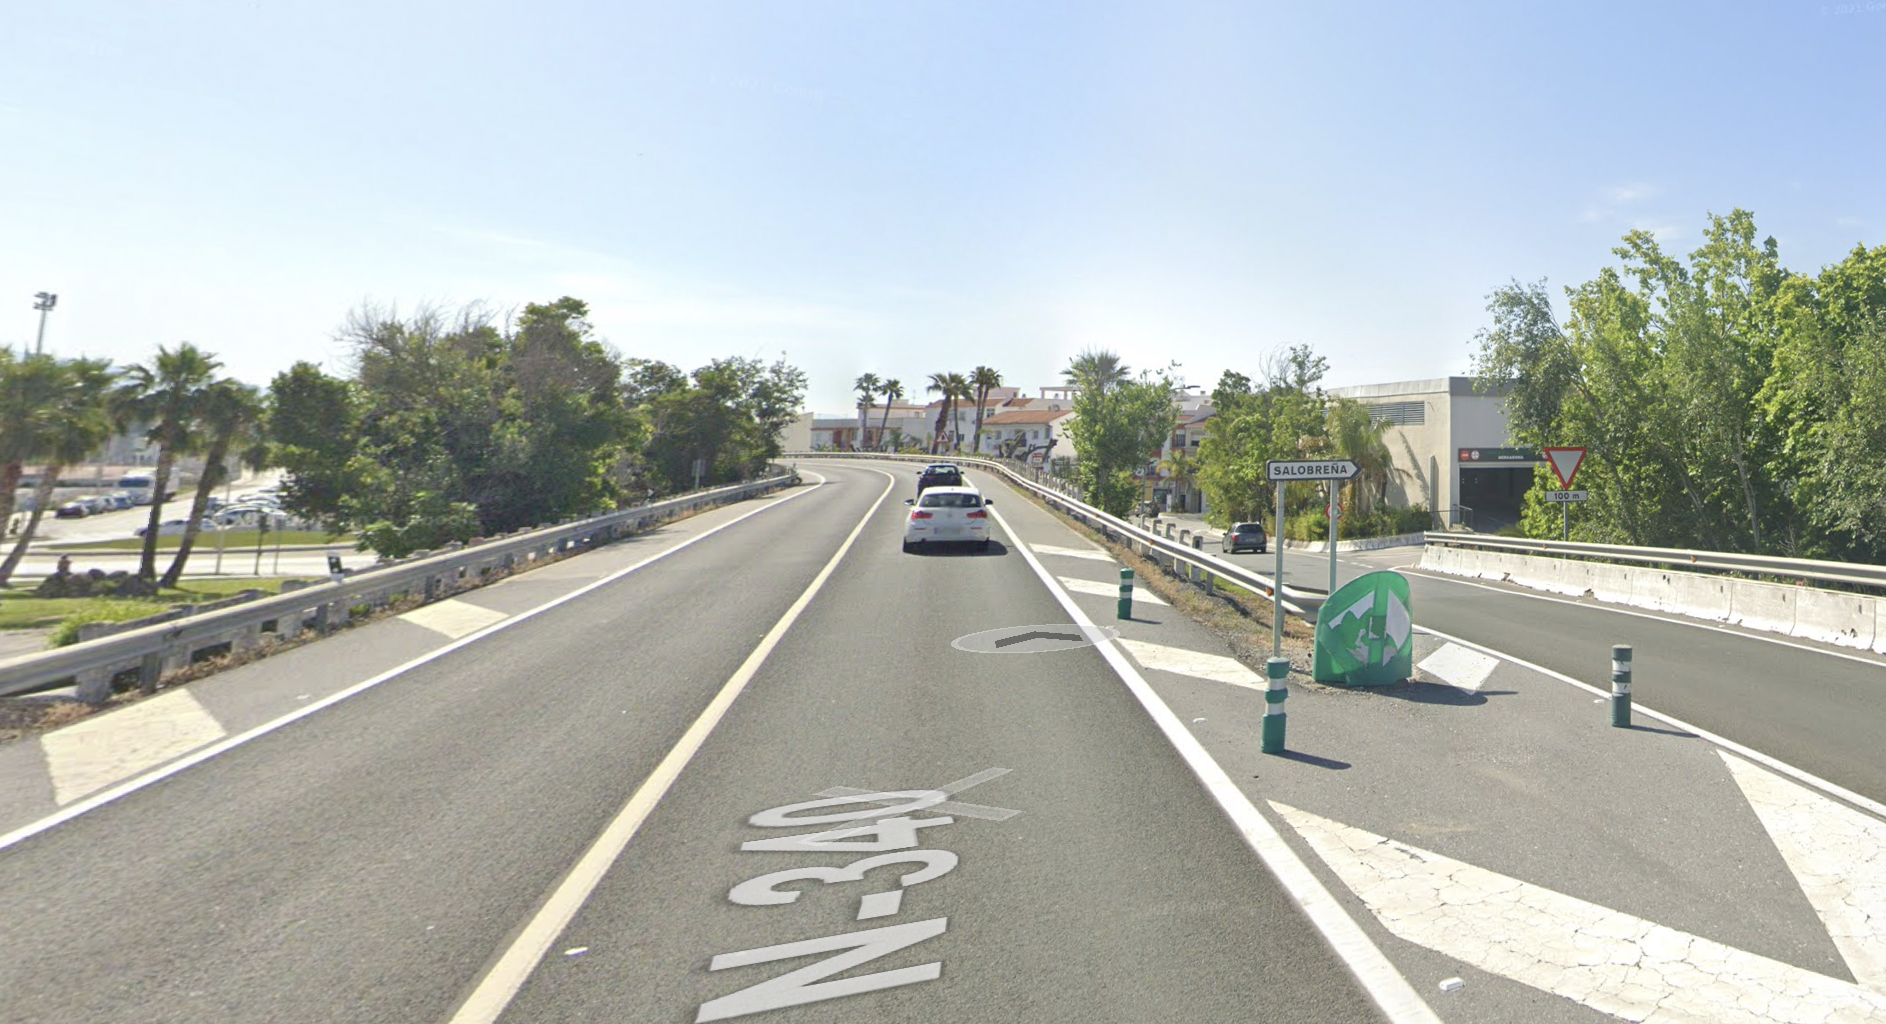 Atropello mortal a un hombre en Salobreña. Imagen de Google maps de la carretera donde se ha producido el suceso.